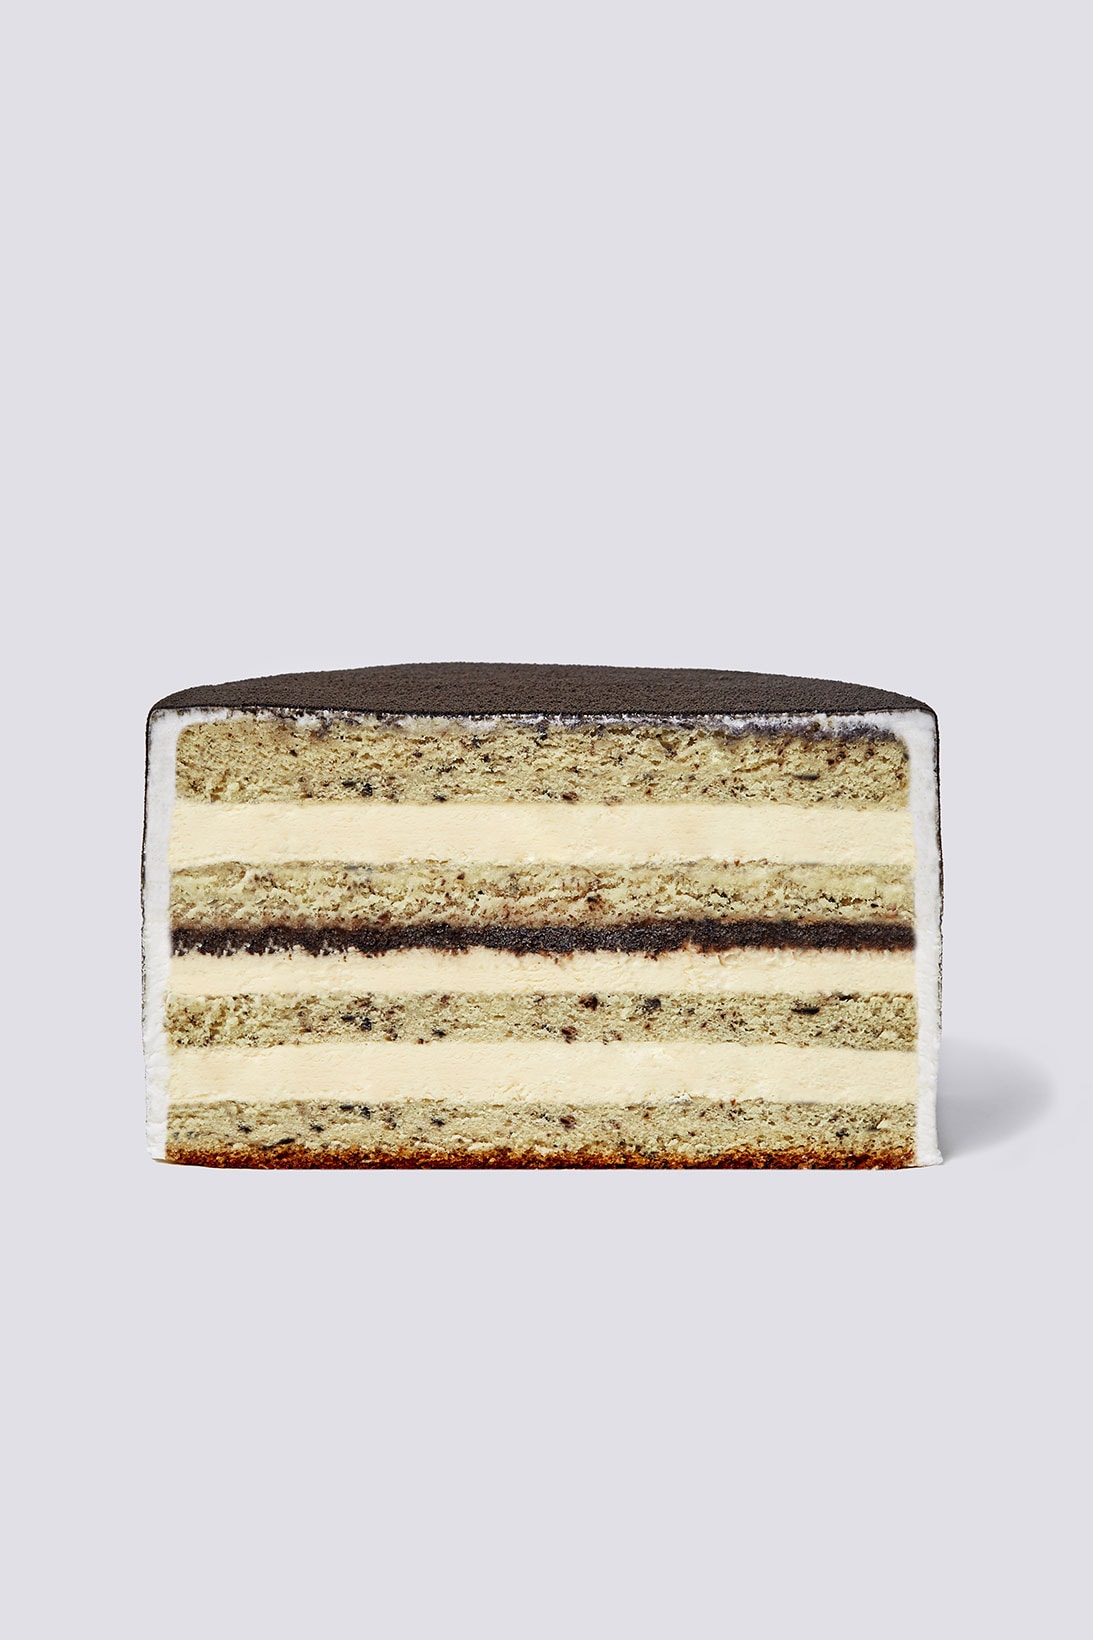 nudake gentle monster dessert brand seoul flagship cake fog white black gradient